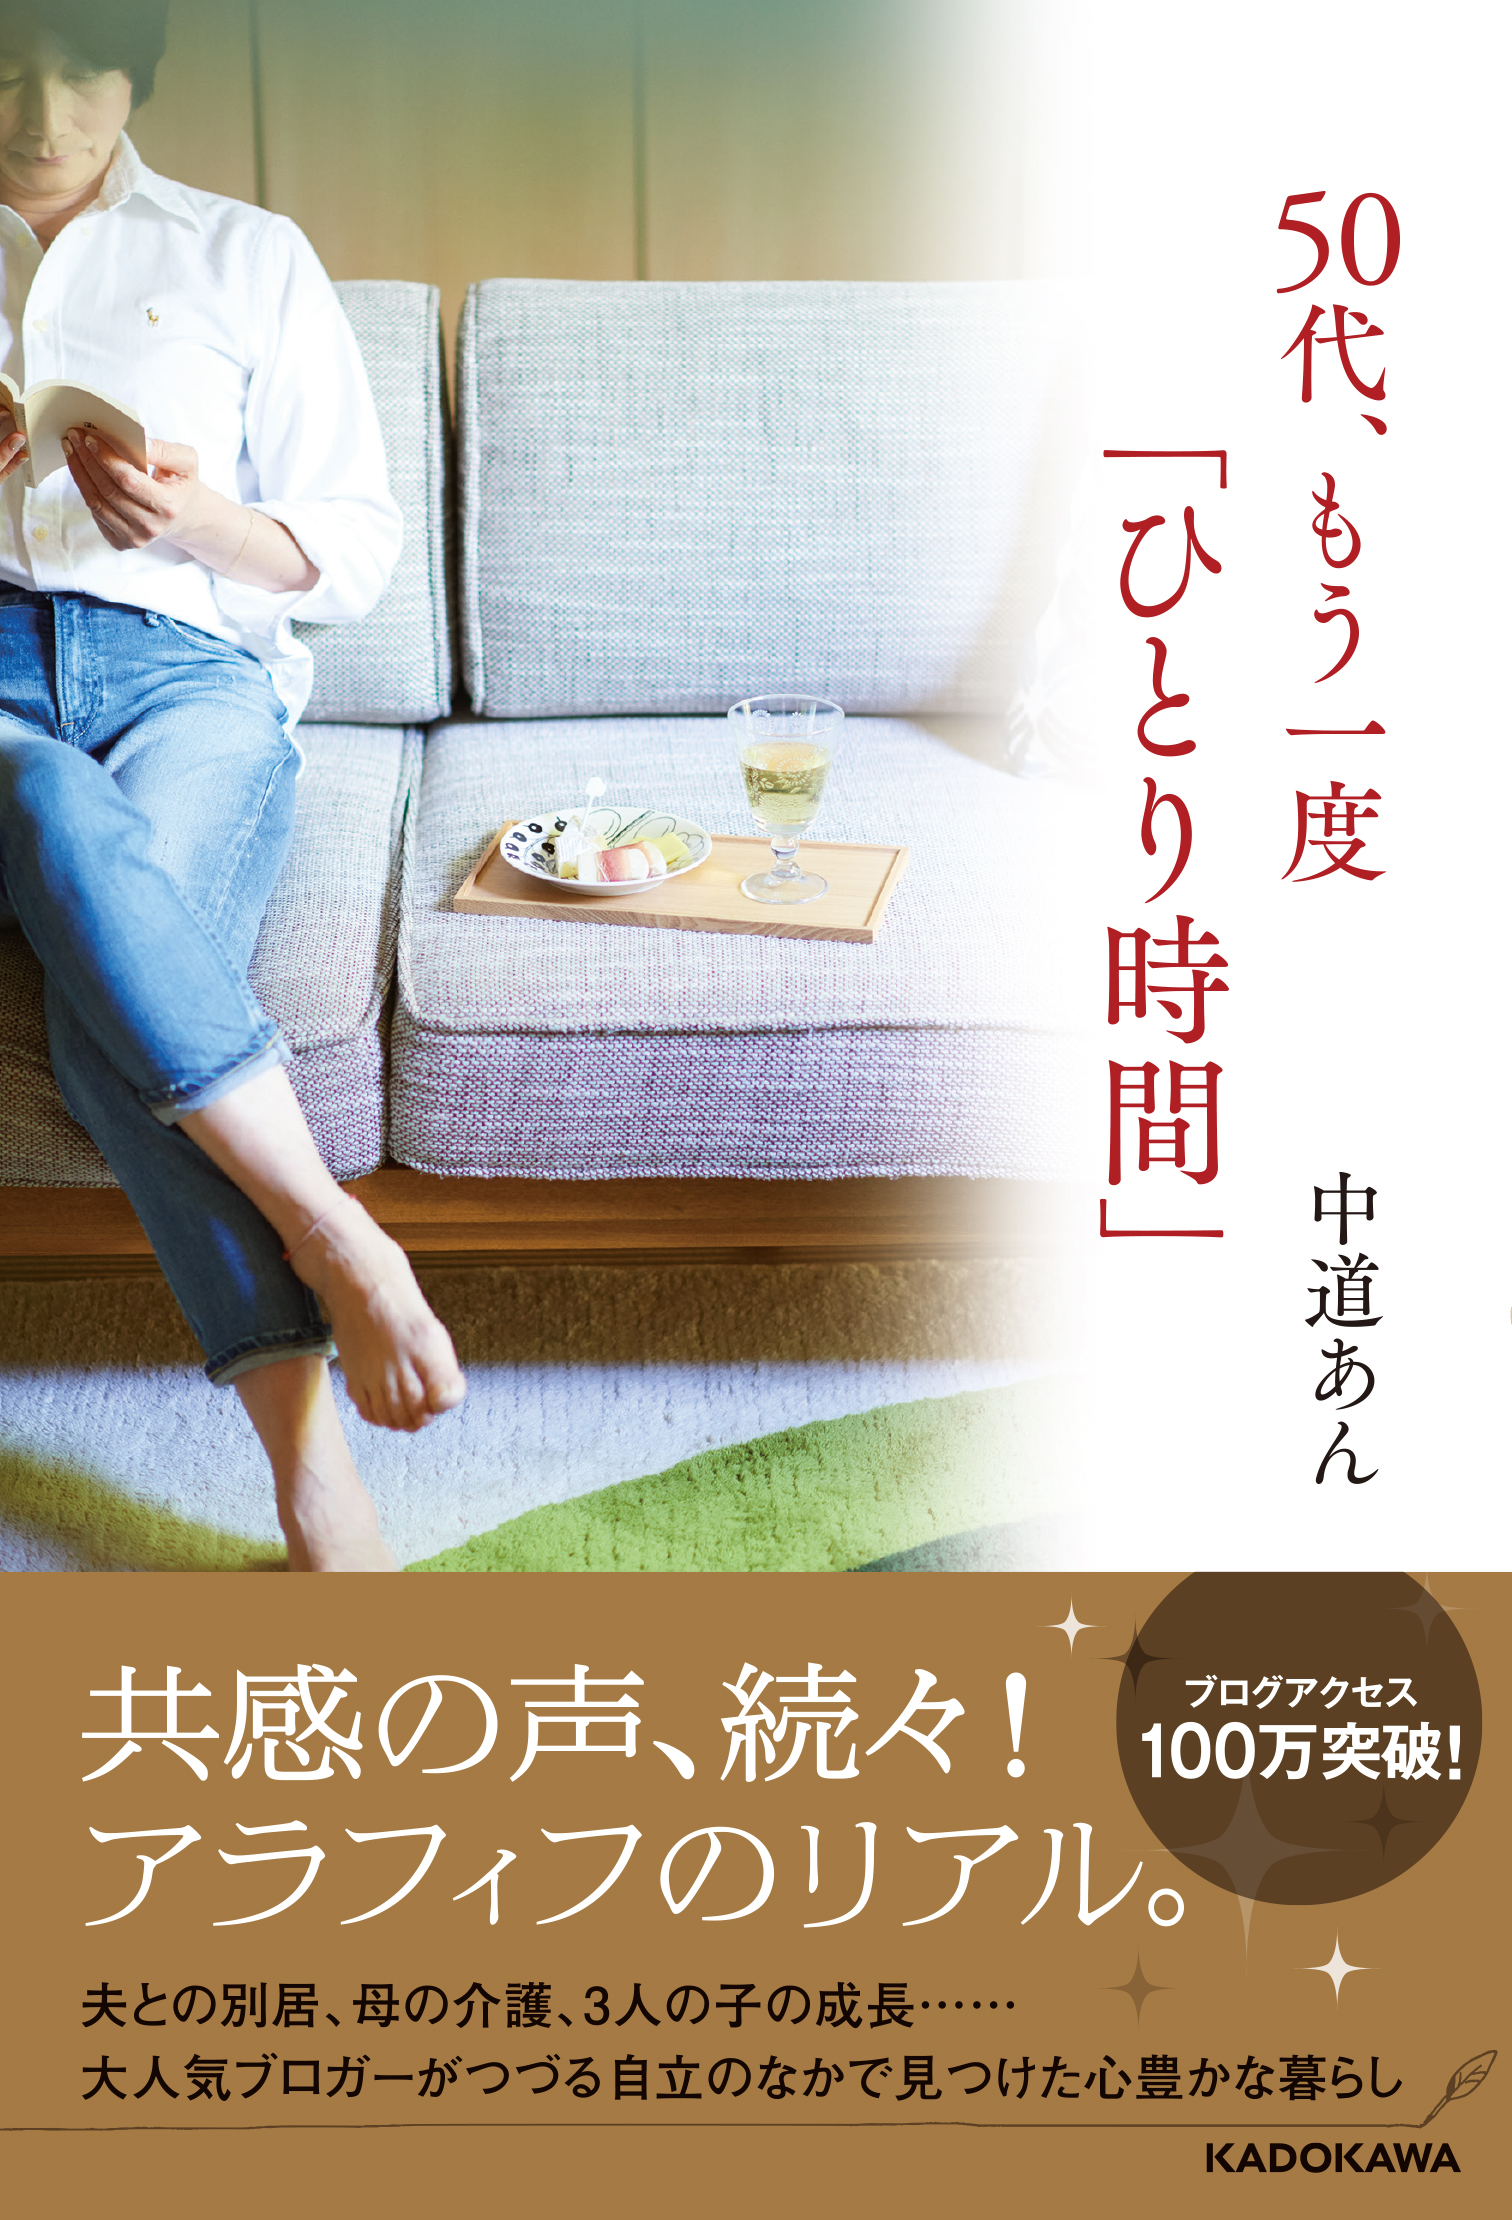 50life_cover-obi.jpg